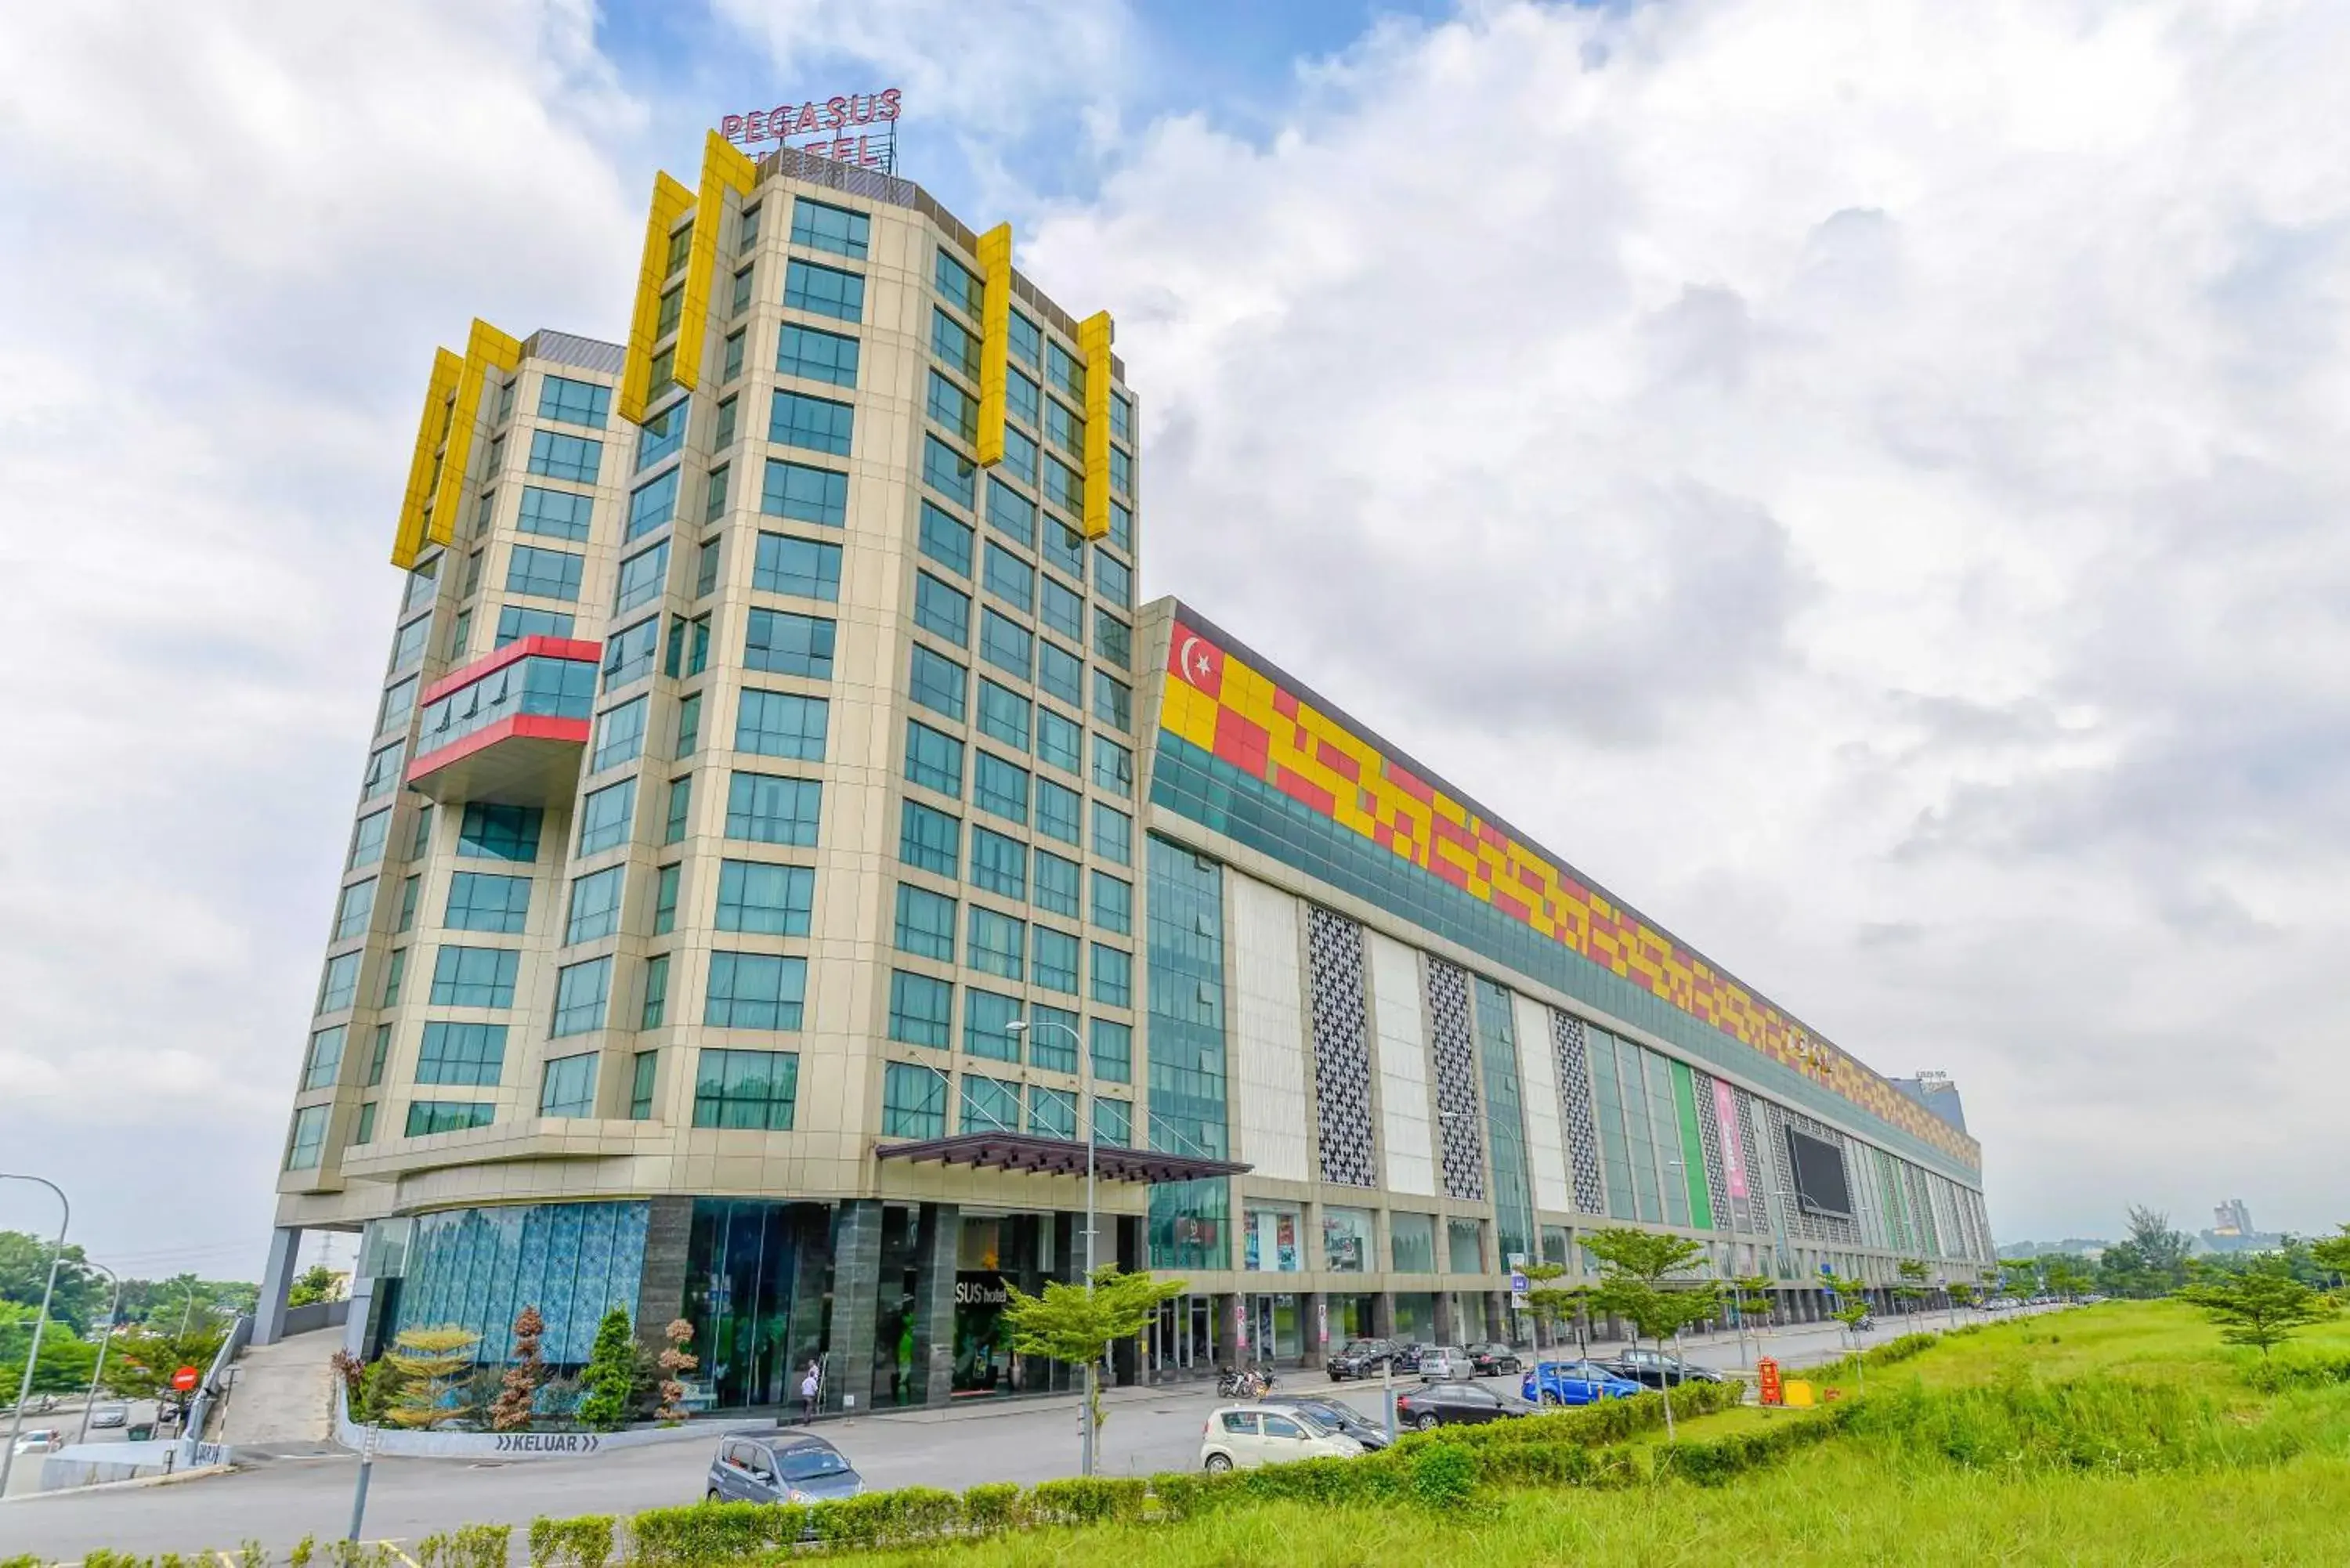 Property building in Pegasus Hotel Shah Alam